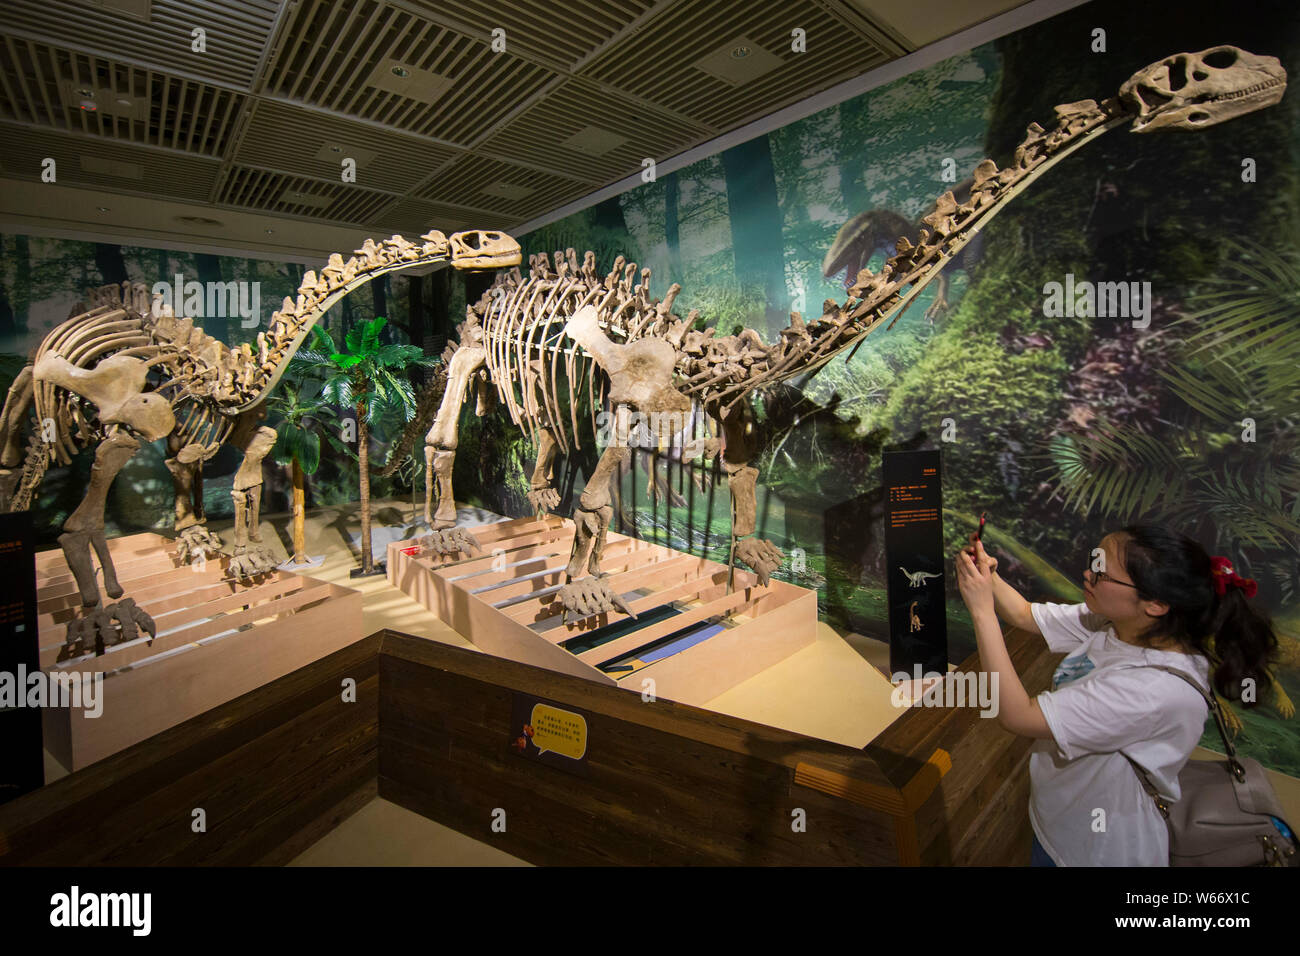 Voir les modèles de dinosaures sur l'affichage à l'exposition mondiale Jurassique Musée de Nanjing à Nanjing city Jiangsu province de Chine orientale, le 13 juillet 2018. L Banque D'Images